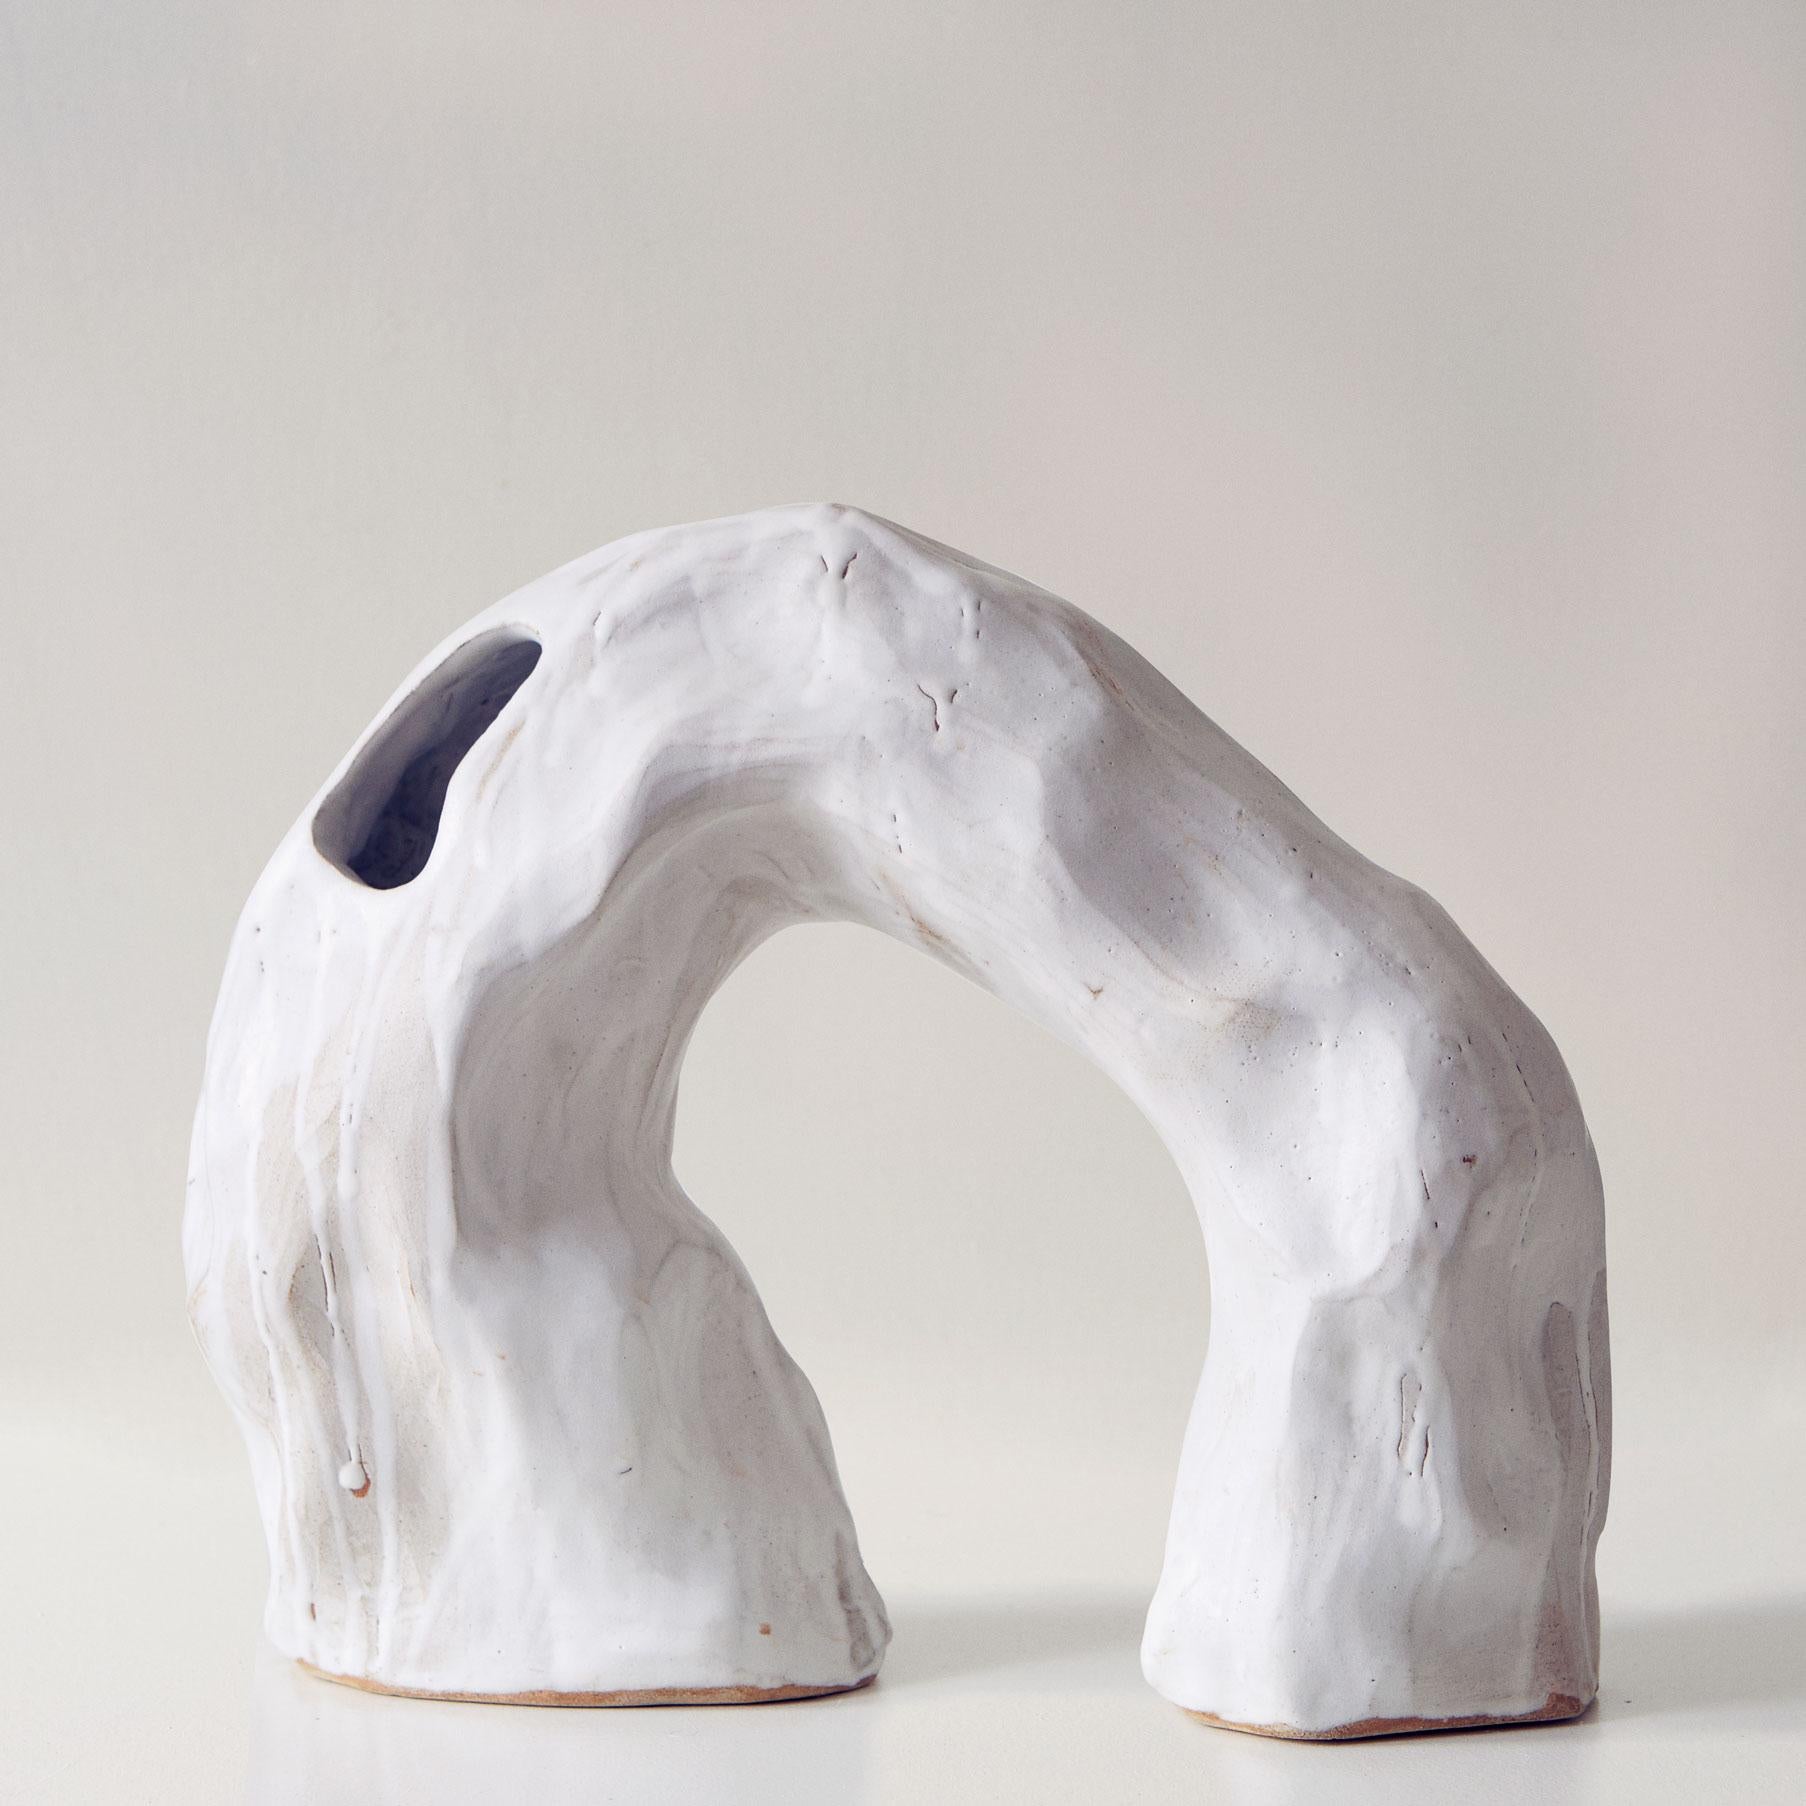 Noe Kuremoto Abstract Sculpture - Yama 6 - Modern Minimalist White Abstract Ceramic Sculpture Vase